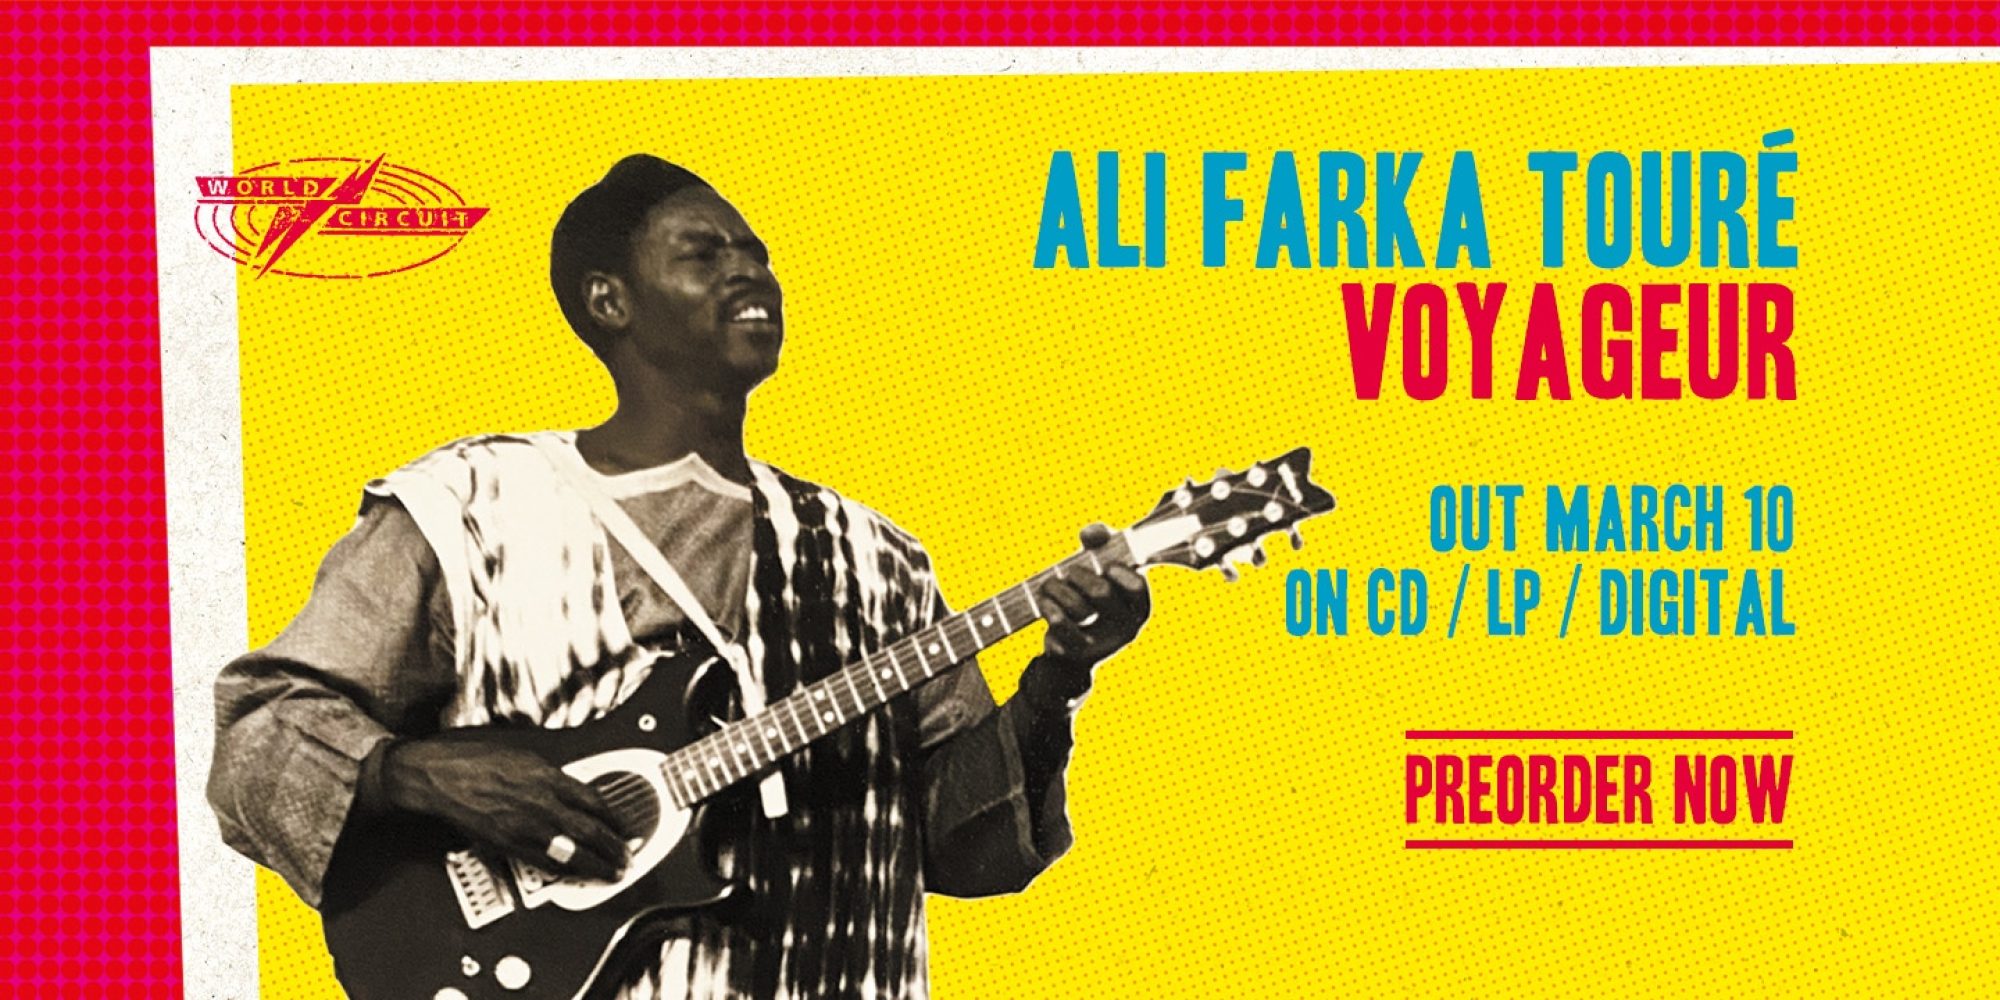 325385622 1213653966254526 4290278358825219709 n مالي..بعد 16 عاماً من وفاته صدور ألبوم جديد لعازف الجيتار والمغني الأفريقي علي فاركا توري